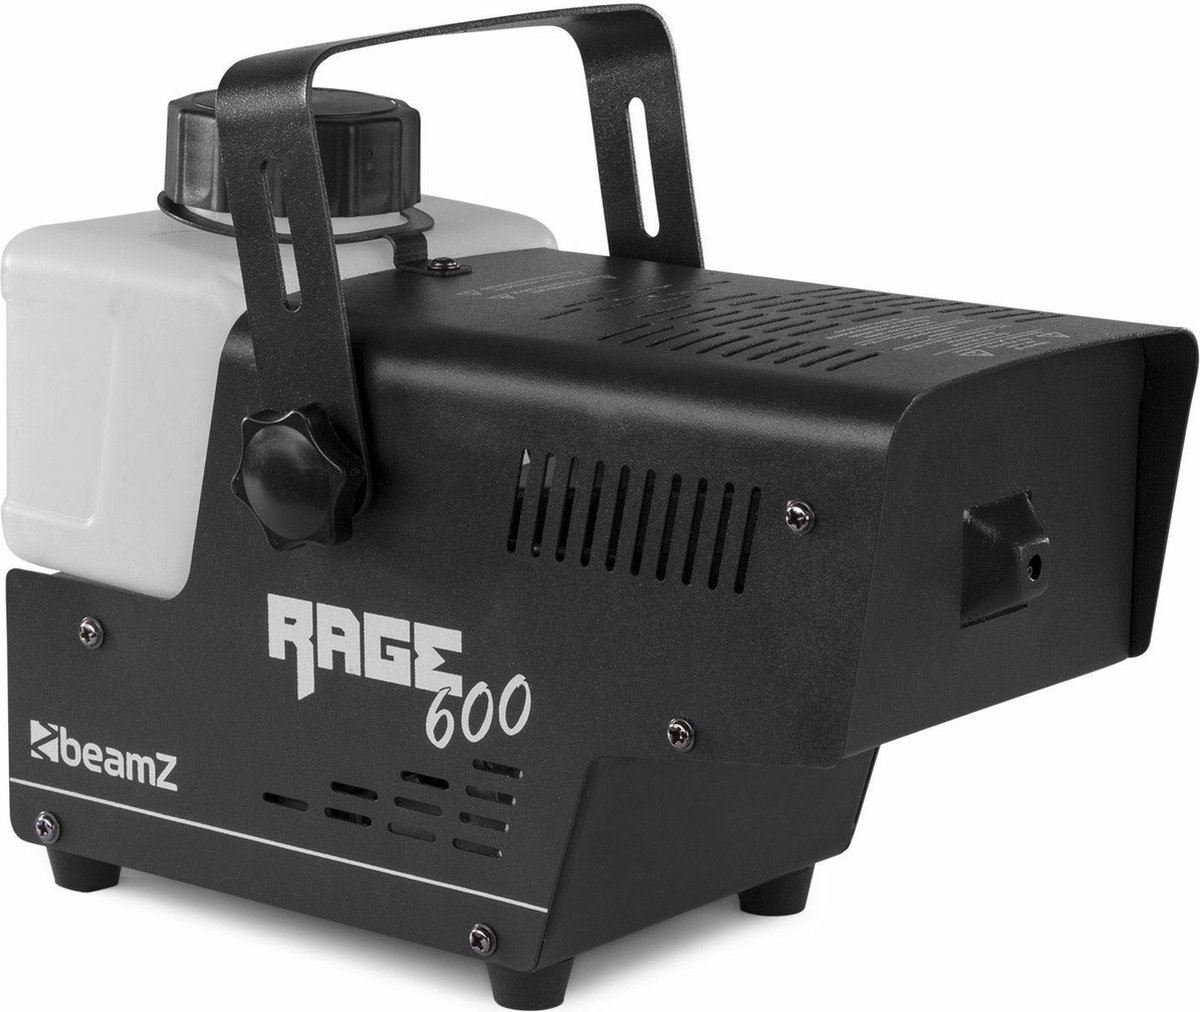 Rookmachine - BeamZ RAGE600I rookmachine 600W met afstandsbediening - BeamZ